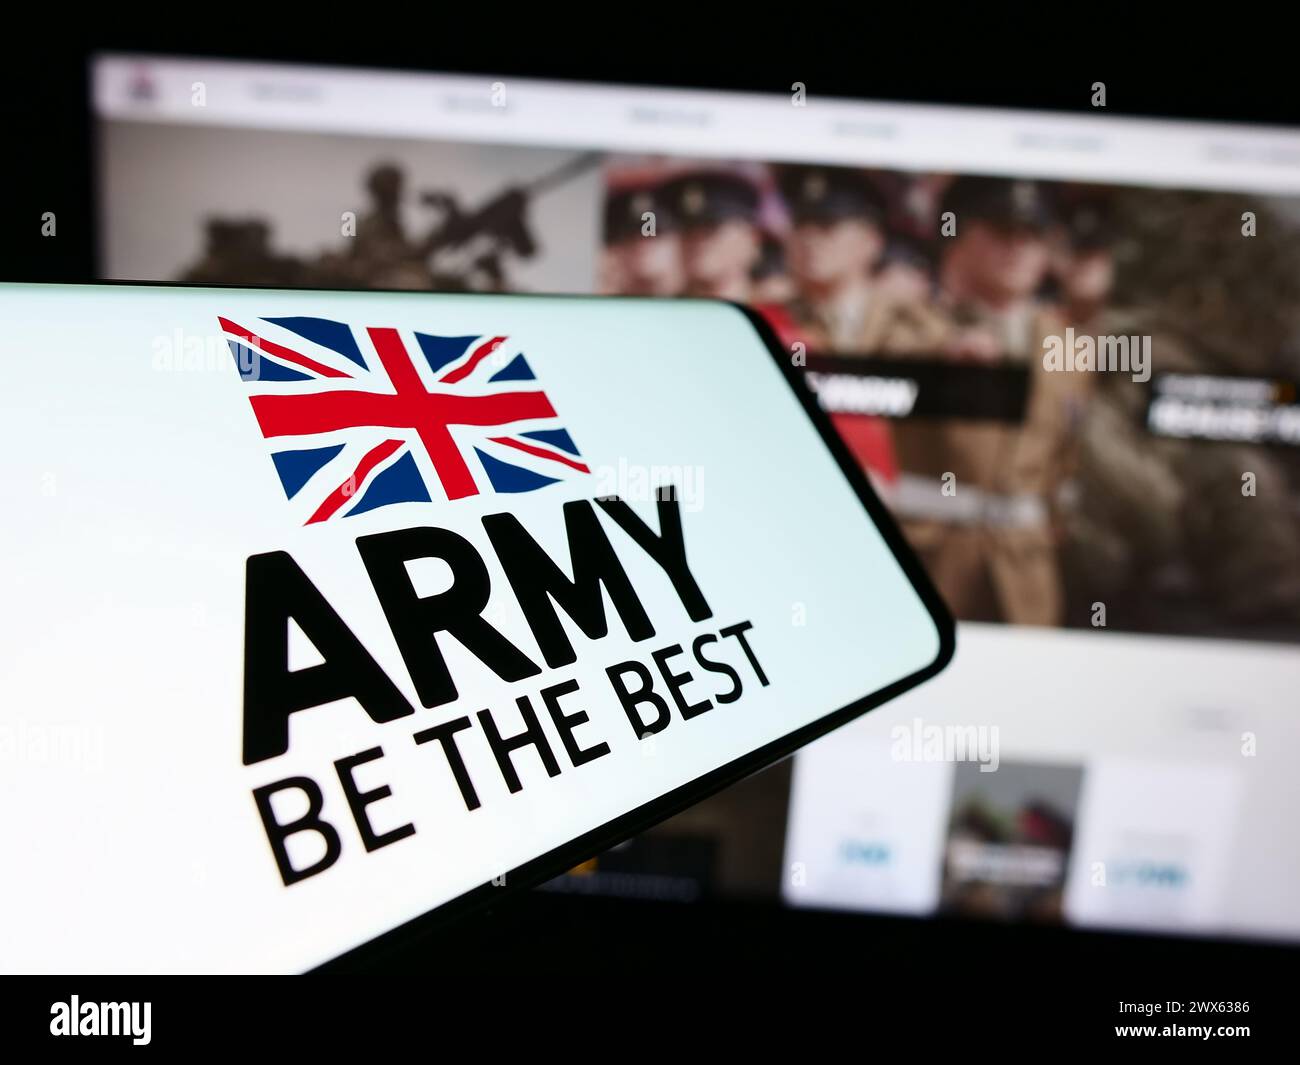 Telefono cellulare con logo della forza di terra britannica British Army davanti al sito web. Messa a fuoco al centro del display del telefono. Foto Stock